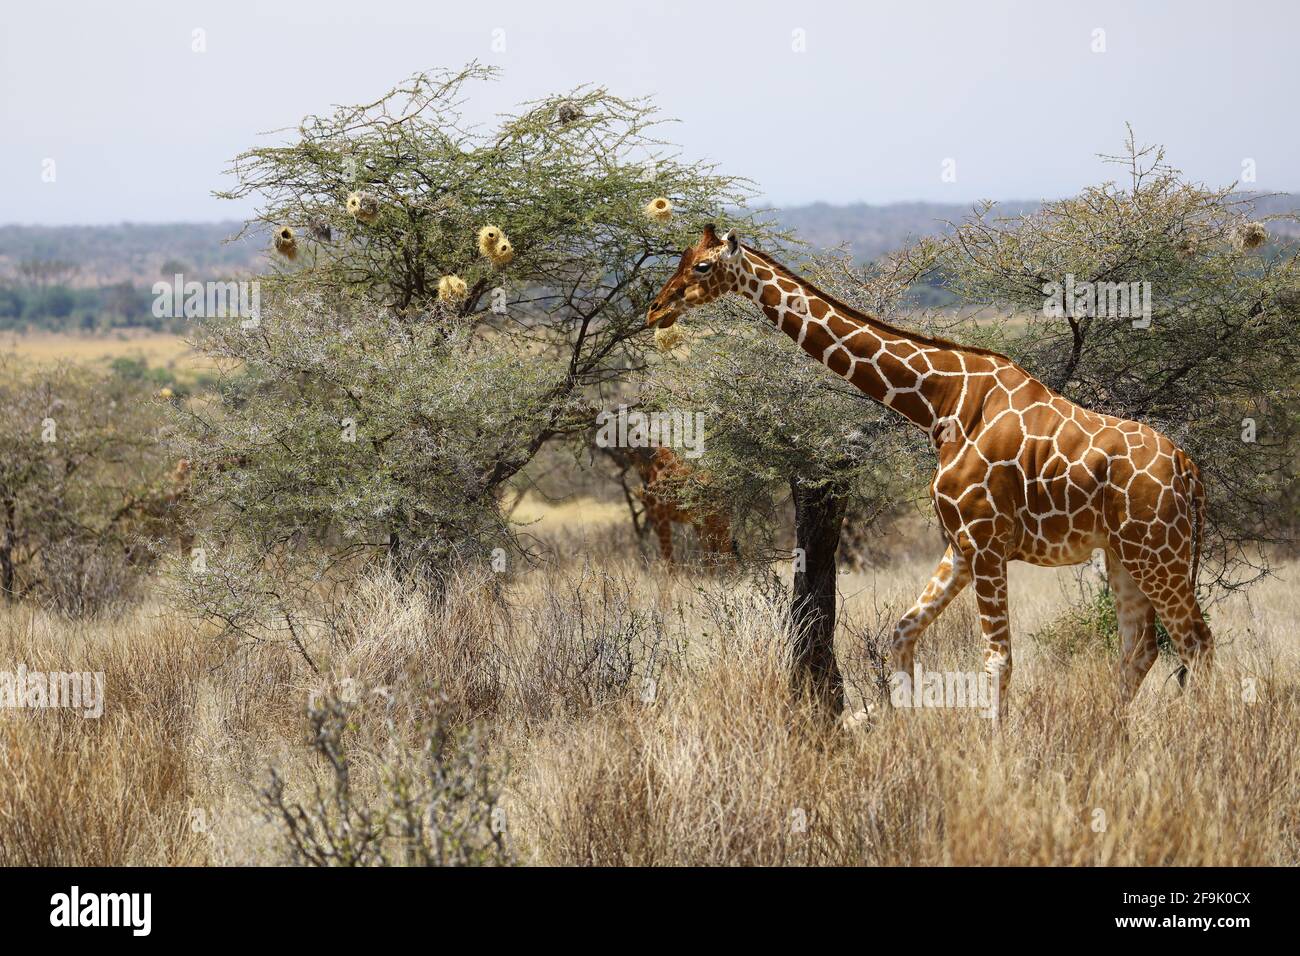 Girafe beim Essen am Baum Banque D'Images